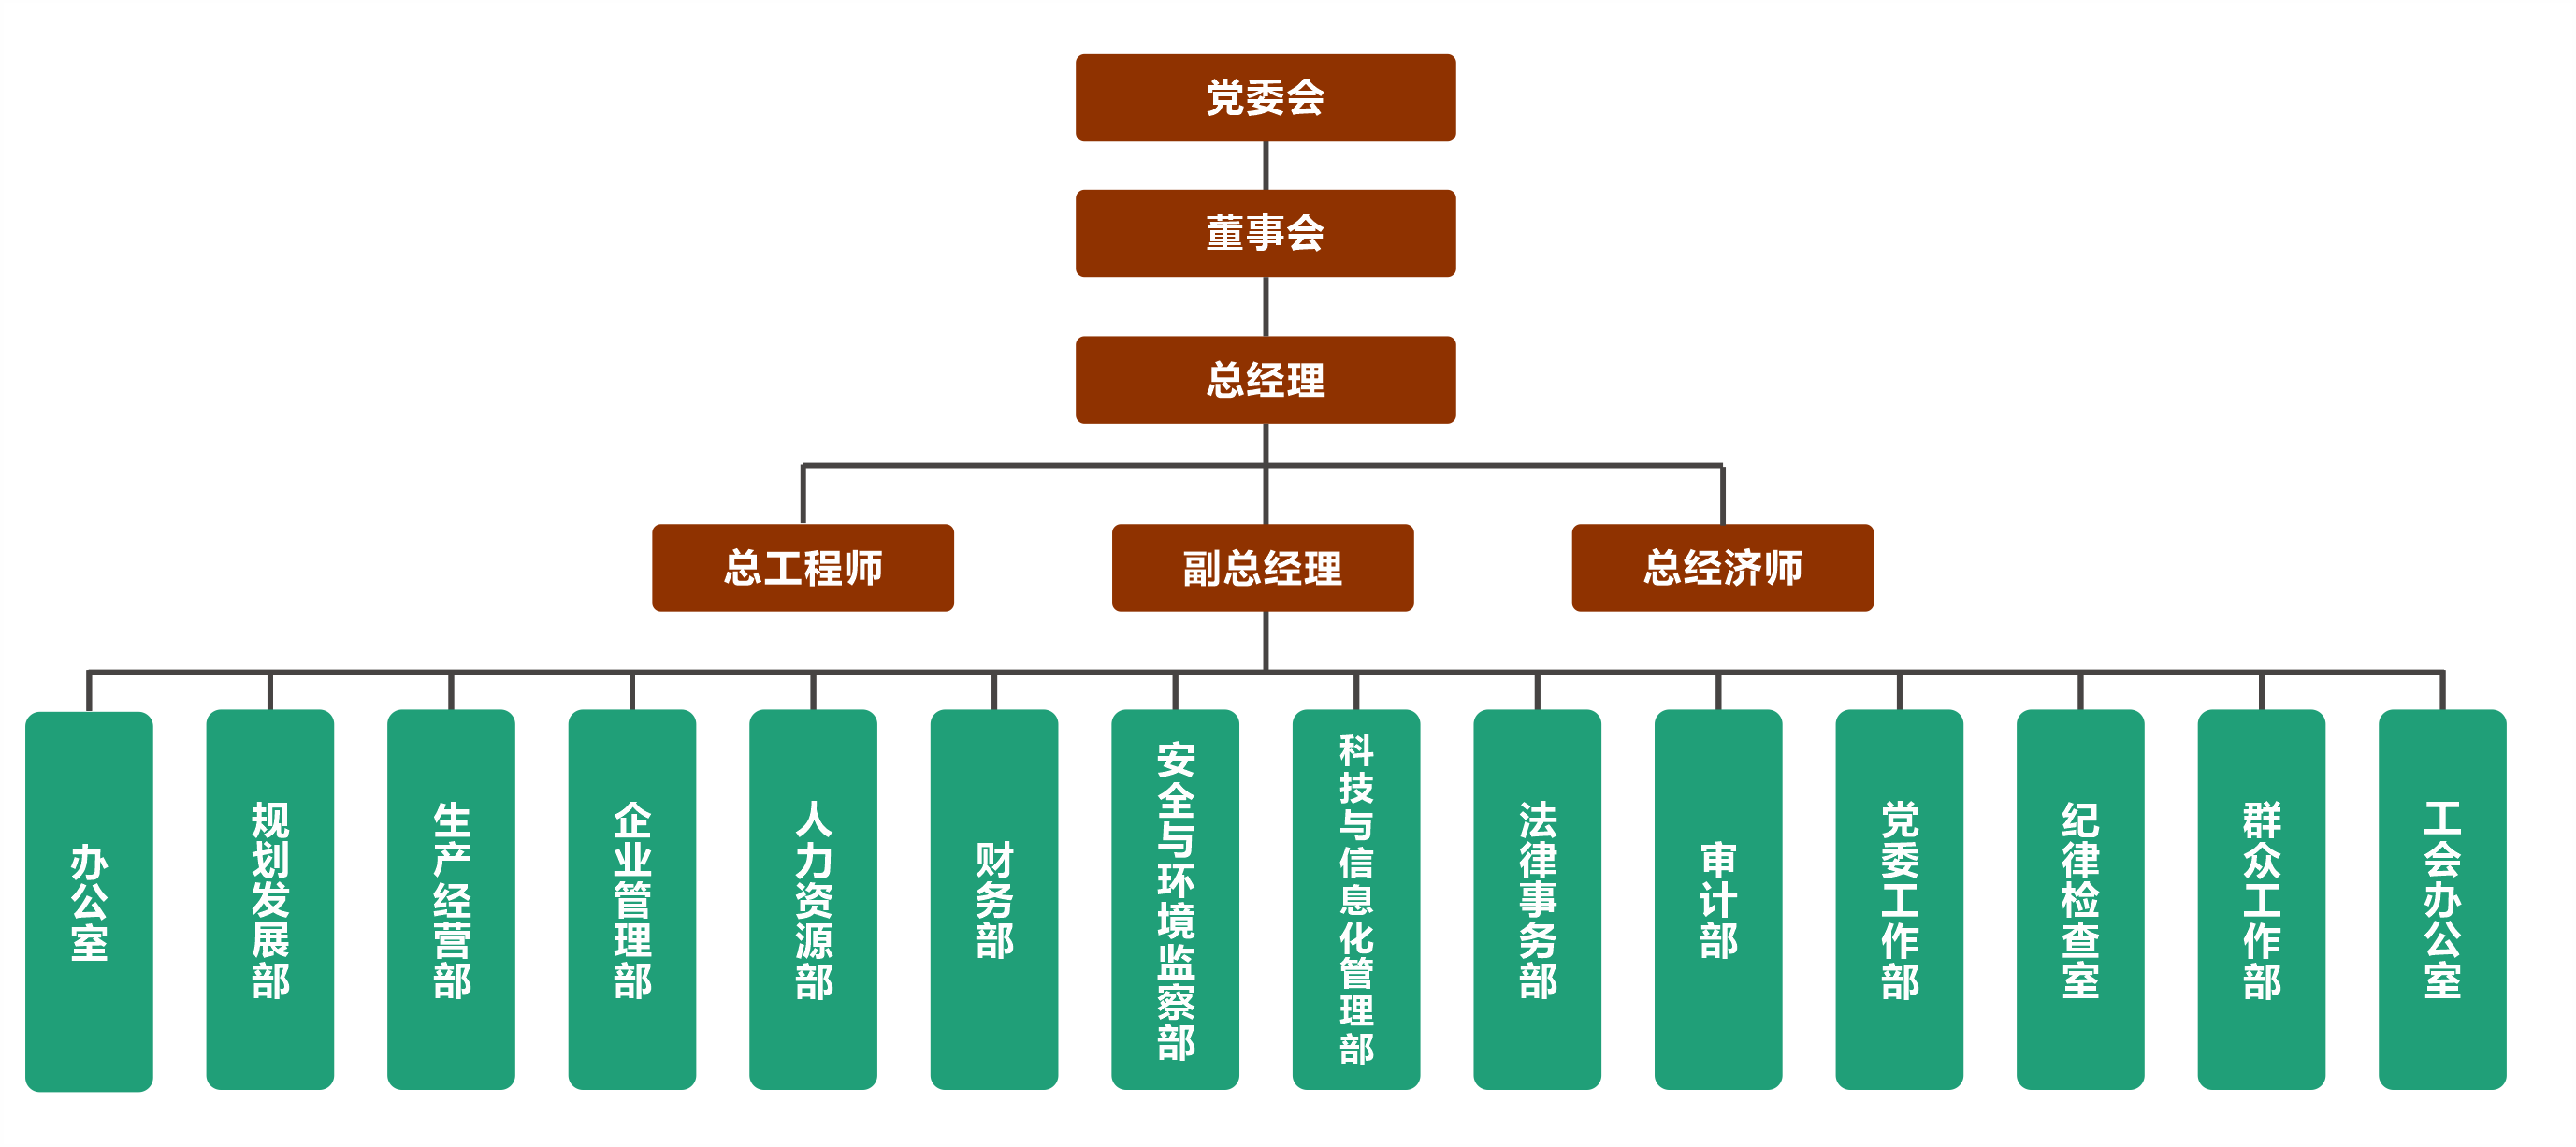 bob游戏官网（中国）股份有限公司组织机构图20210225.png